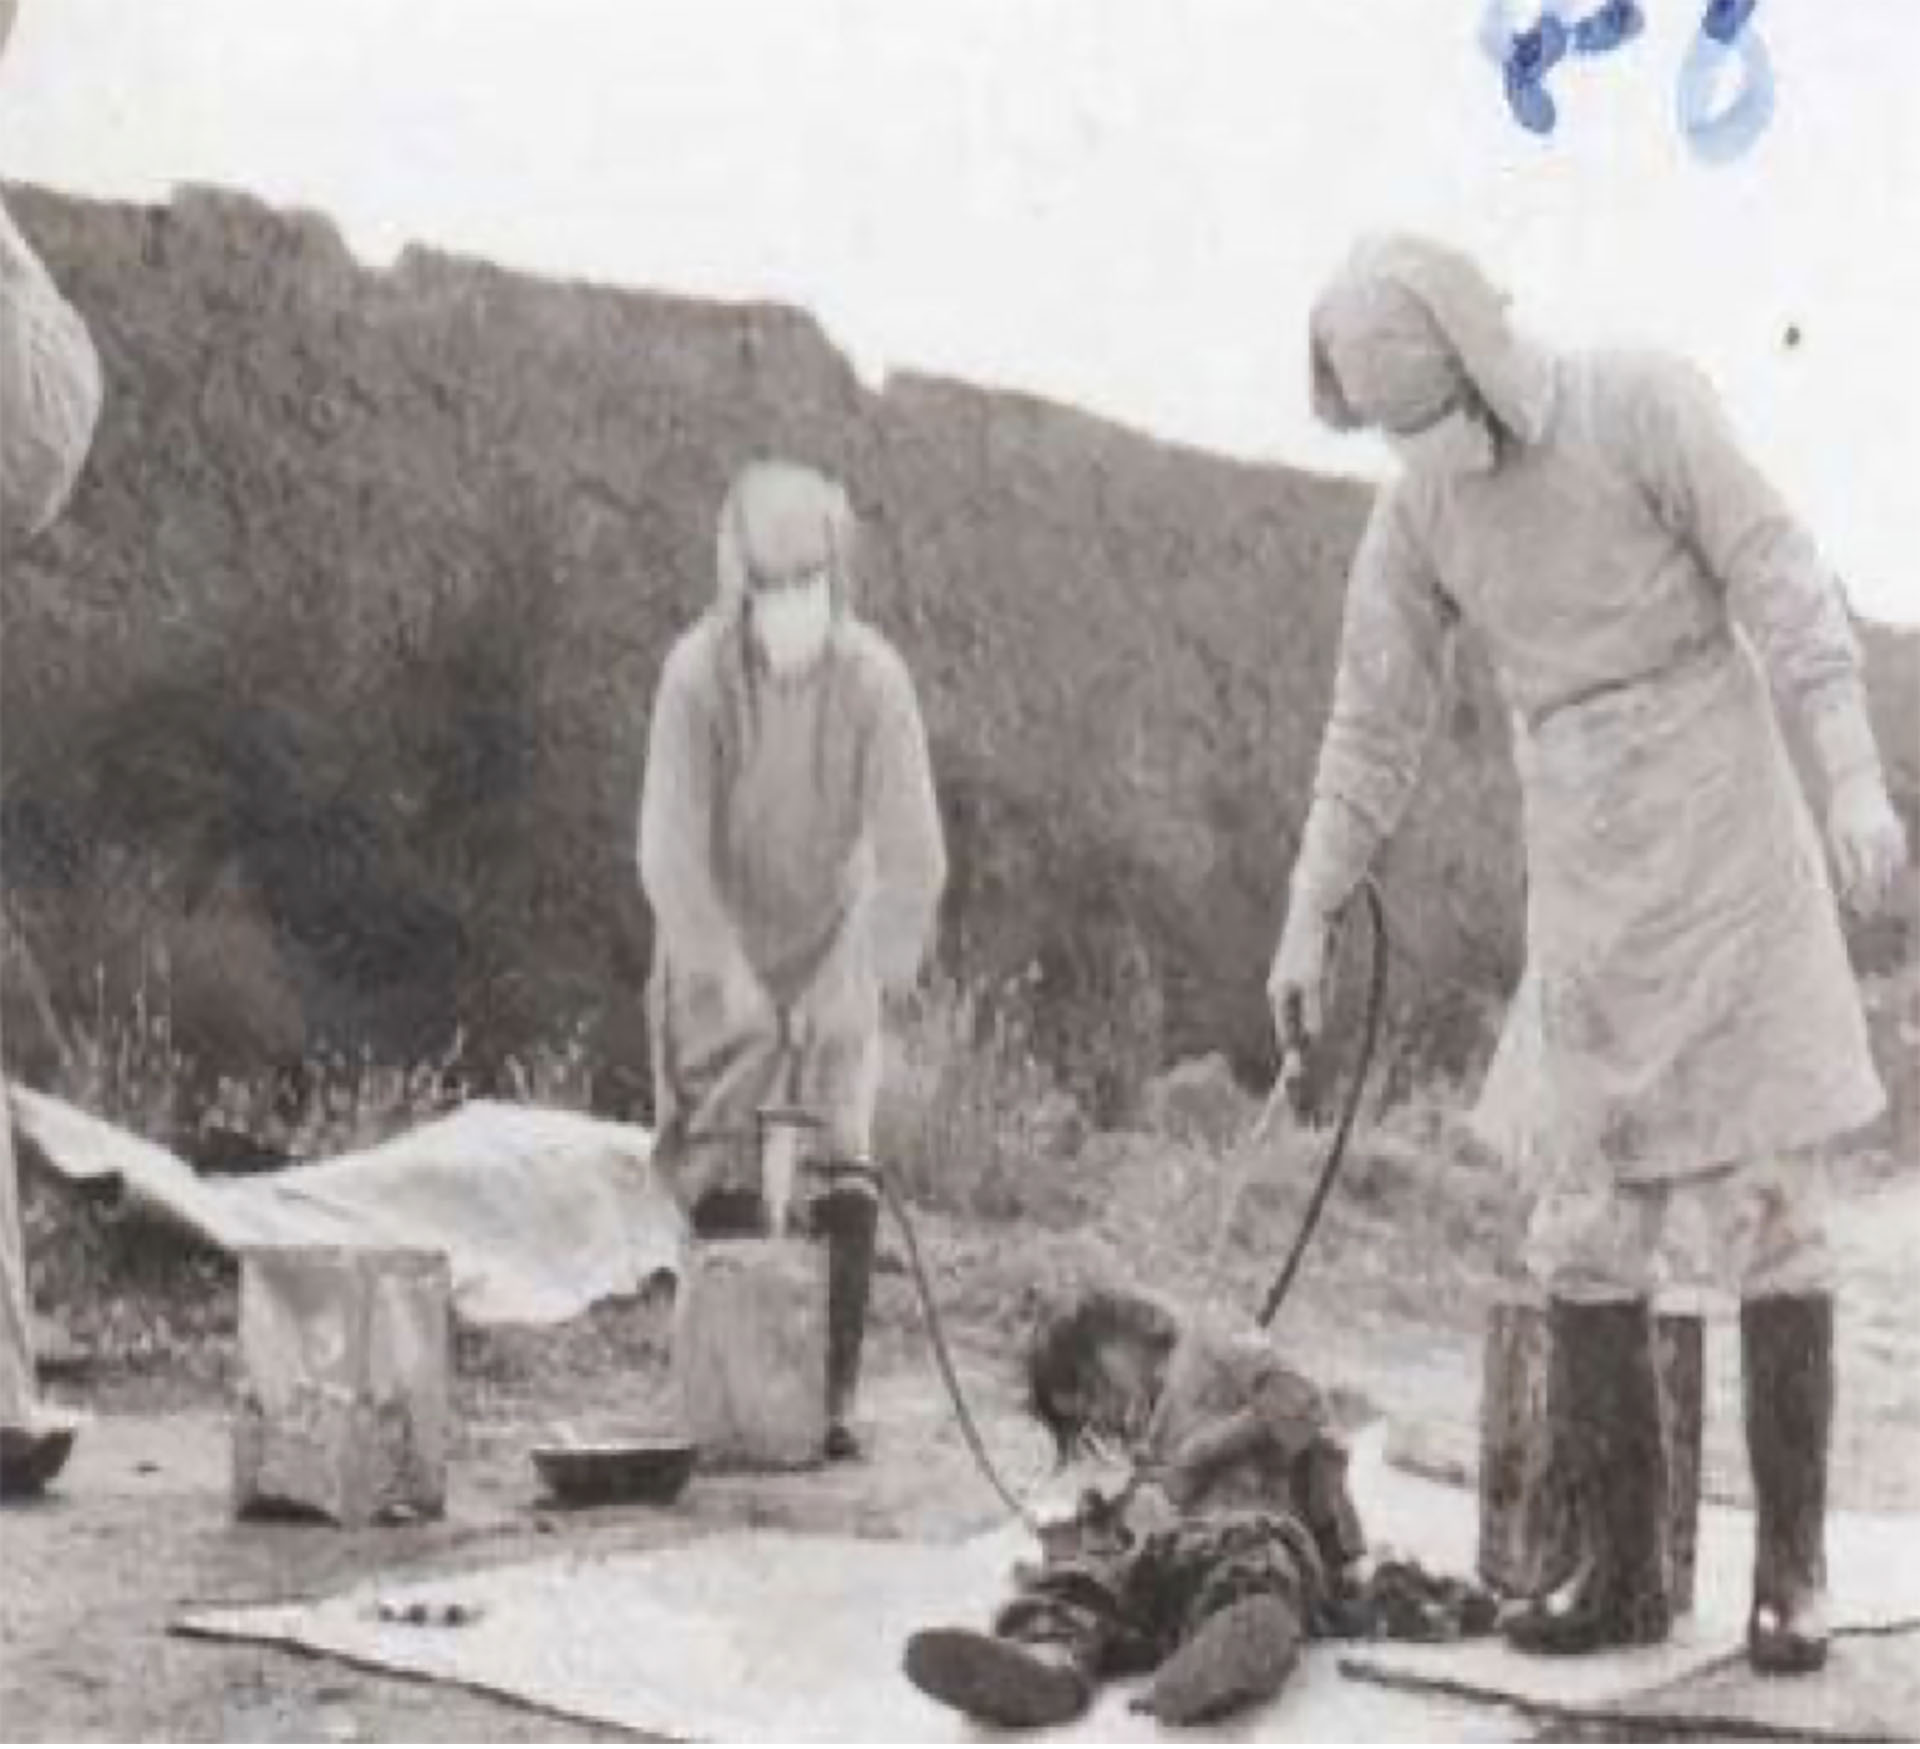 Fotografías de los experimentos con armas químicas realizados por unidades especiales del Ejército Imperial japonés en el territorio ocupado de Manchuria.